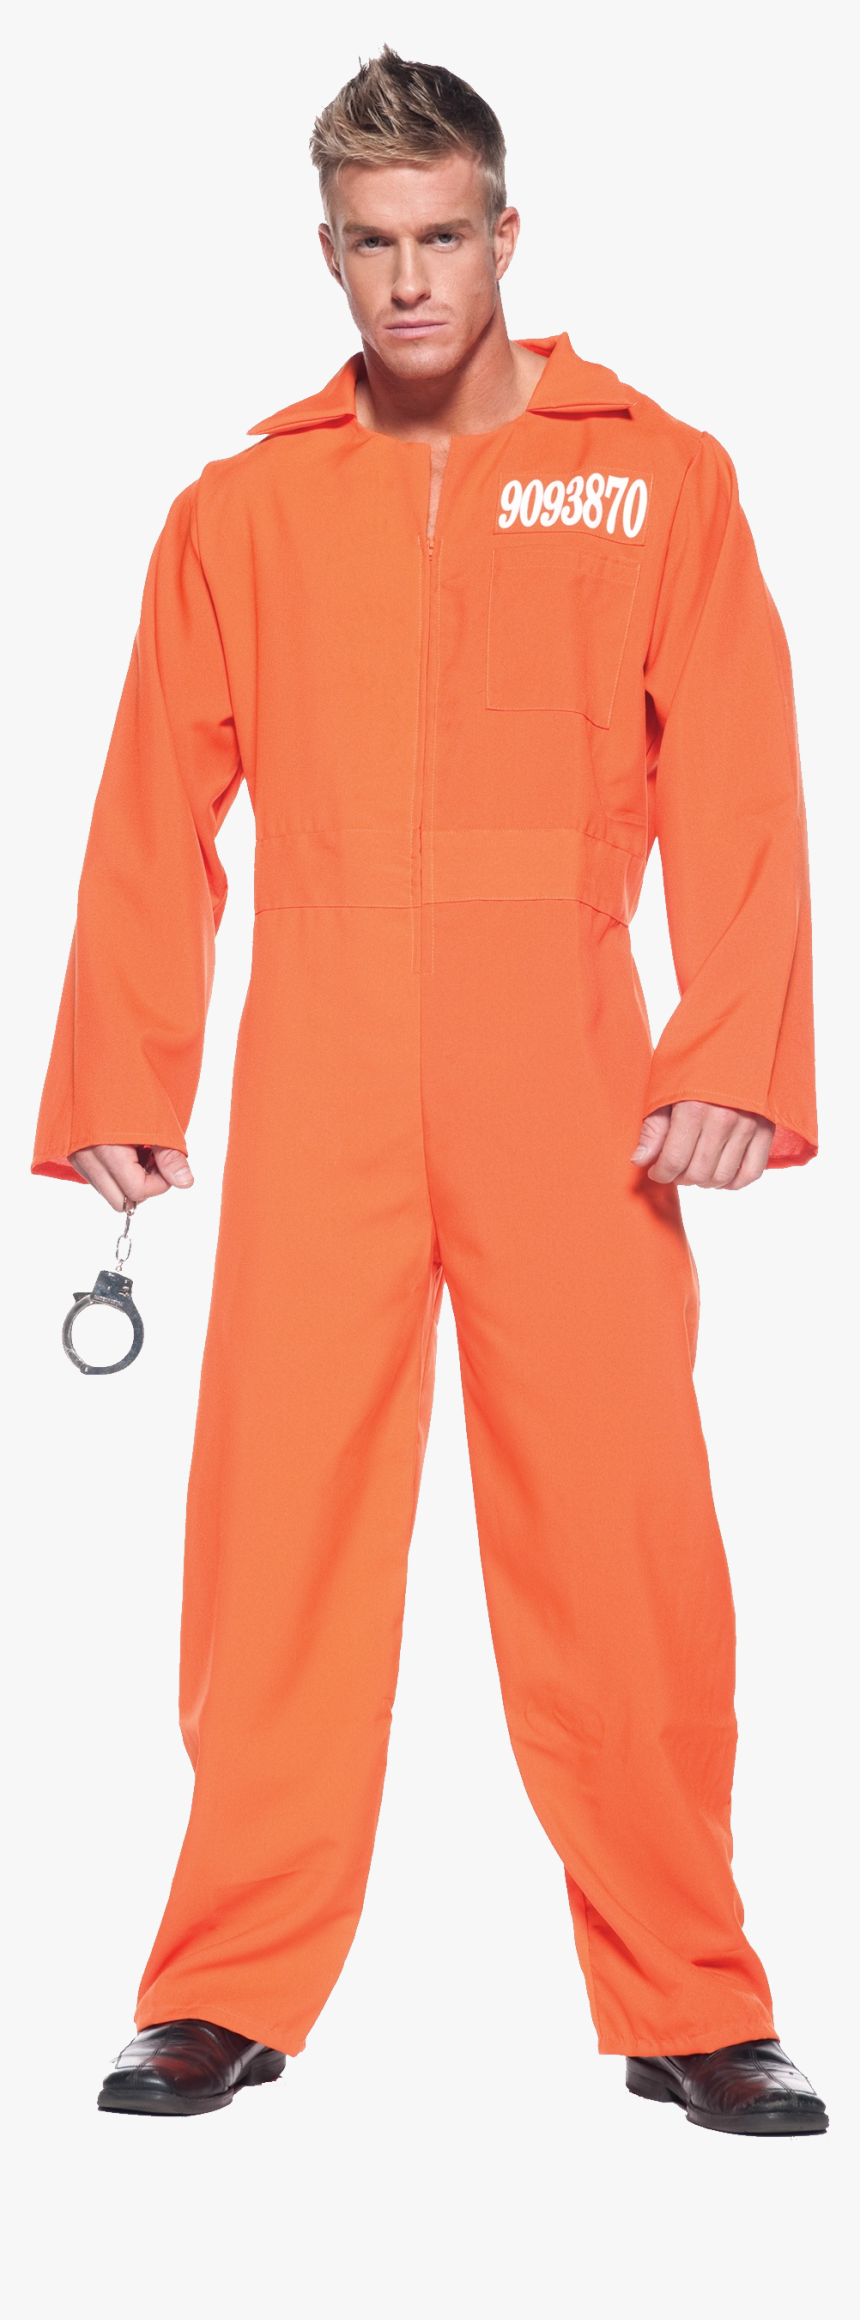 Prisoner Png - Male Prisoner Costumes For Halloween, Transparent Png, Free Download